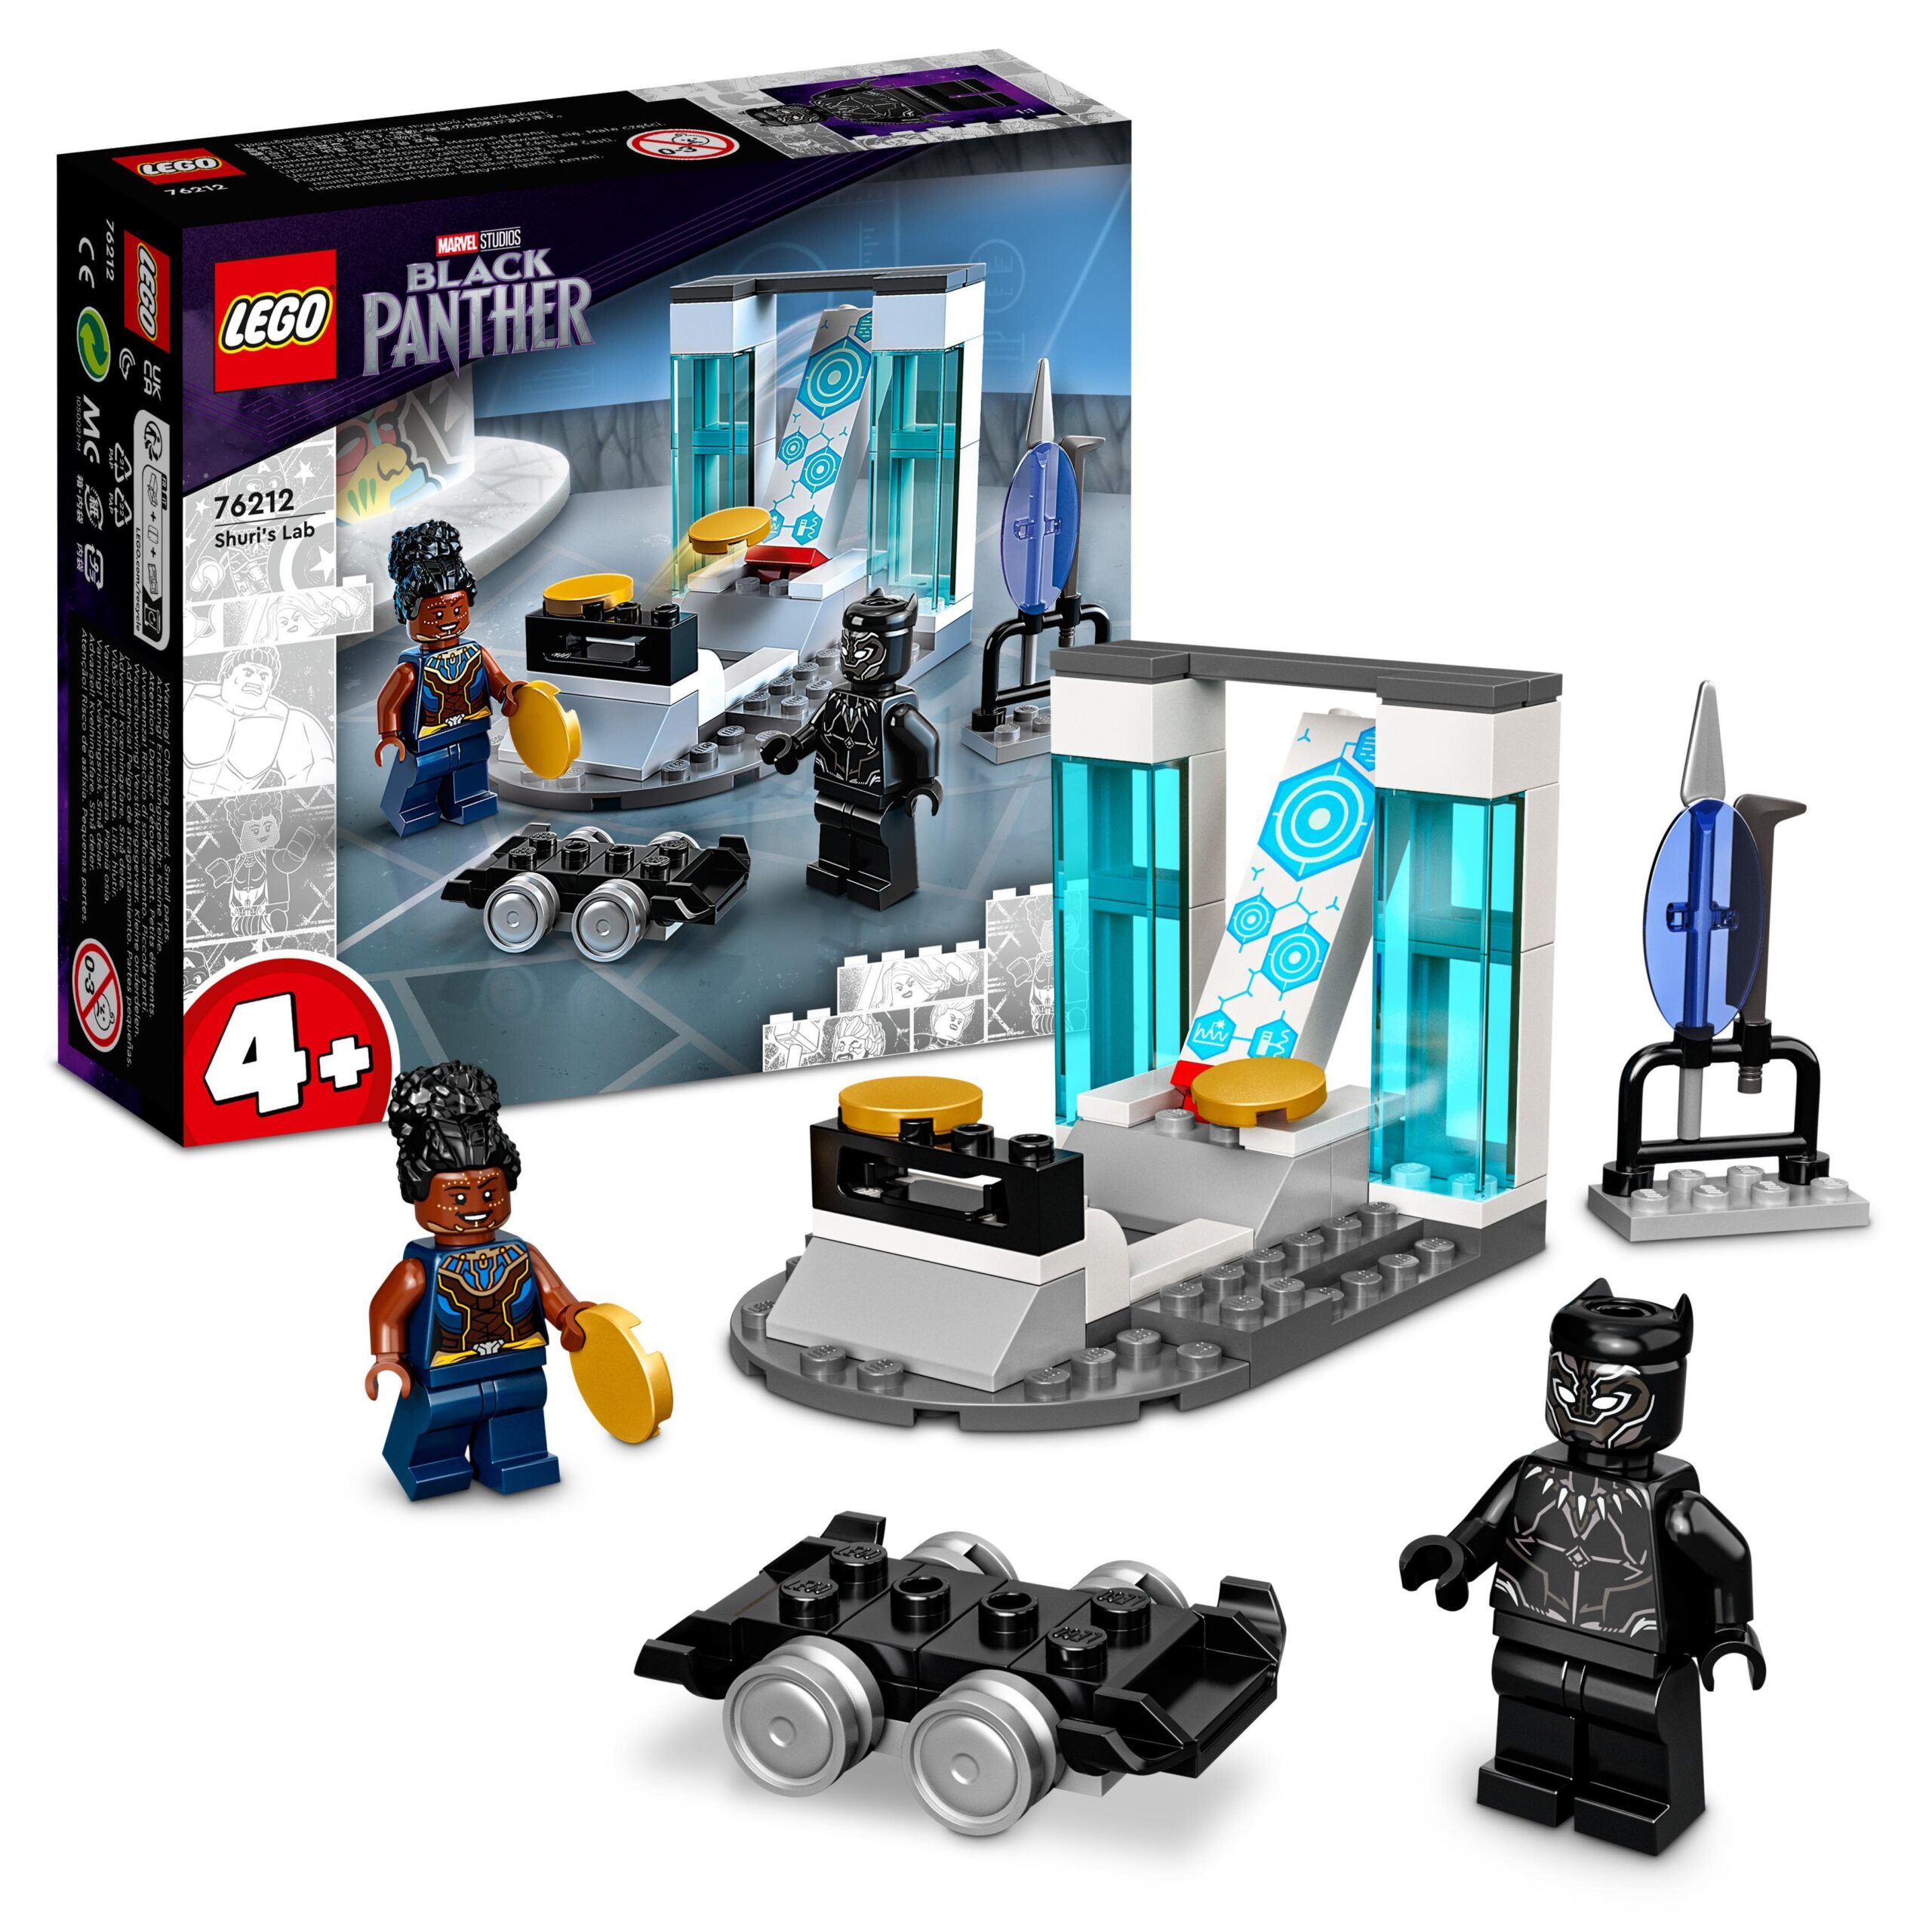 Lego marvel 76212 il laboratorio di shuri, con black panther supereroe, giochi per bambini e bambine dai 4 anni, idee regalo - Avengers, Lego, Spiderman